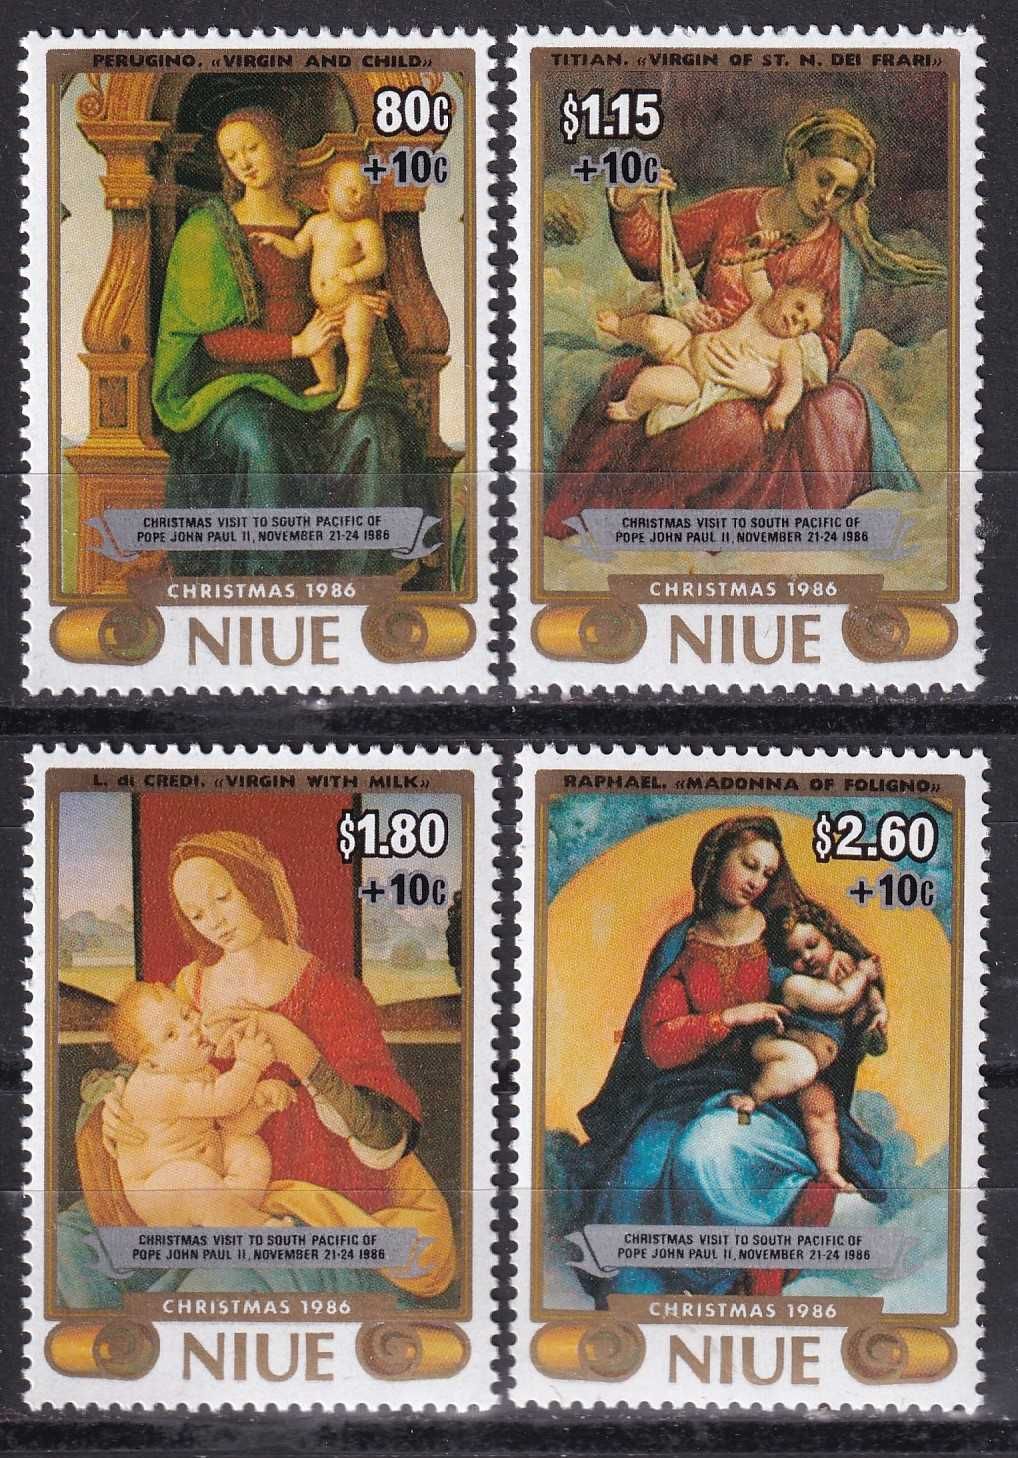 znaczki pocztowe - Niue 1986 cena 8,90 zł kat.13,50€